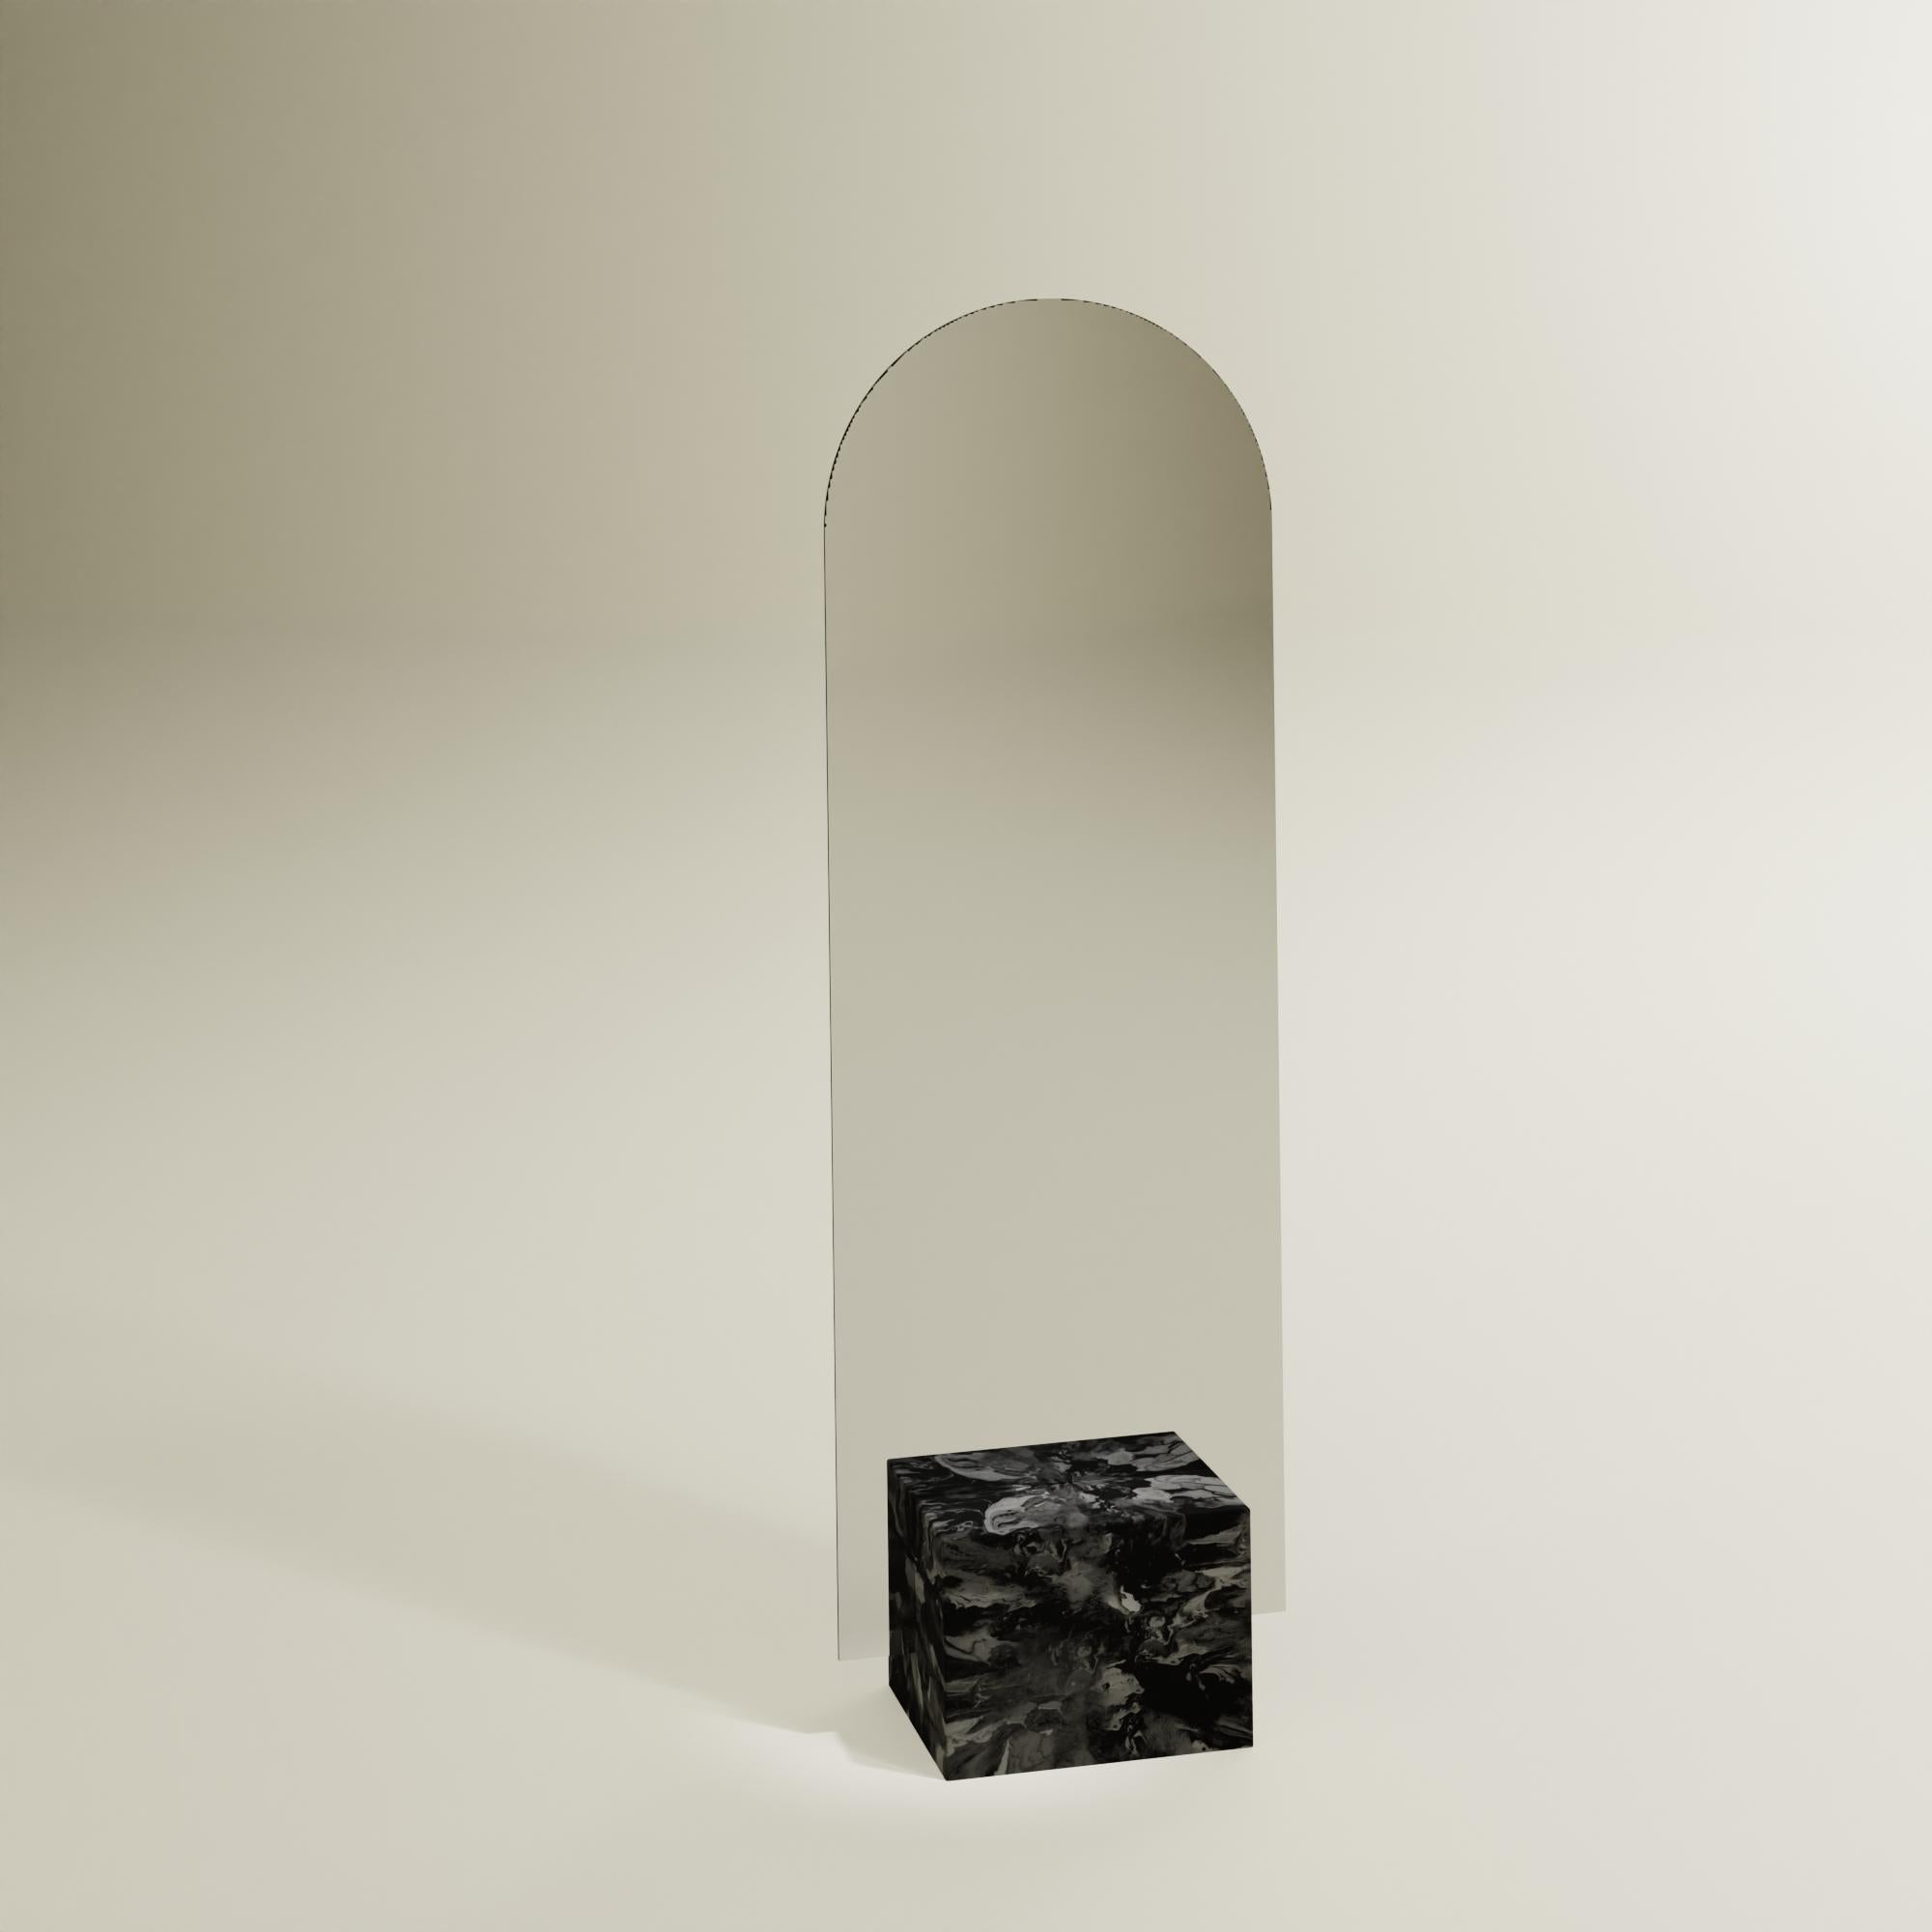 Zeitgenössischer schwarzer Standspiegel, handgefertigt aus 100% recyceltem Kunststoff von Anqa Studios
Mit seinem steinartigen Boden und der zerbrechlich wirkenden Silhouette des Oberteils ist der ANQA Moonrise Spiegel eine moderne Verbindung von